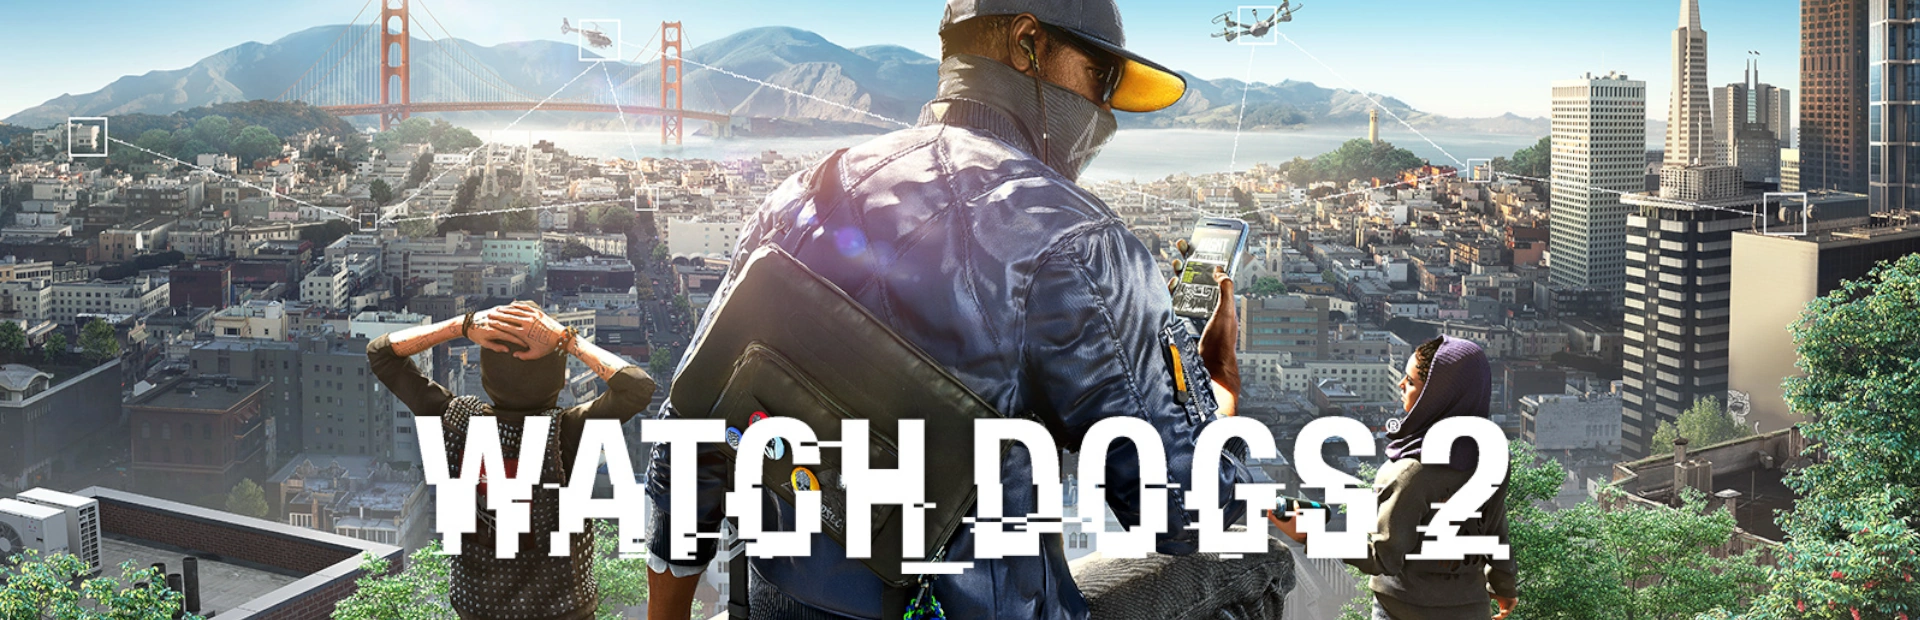 دانلود بازی Watch Dogs 2 برای کامپیوتر | گیمباتو